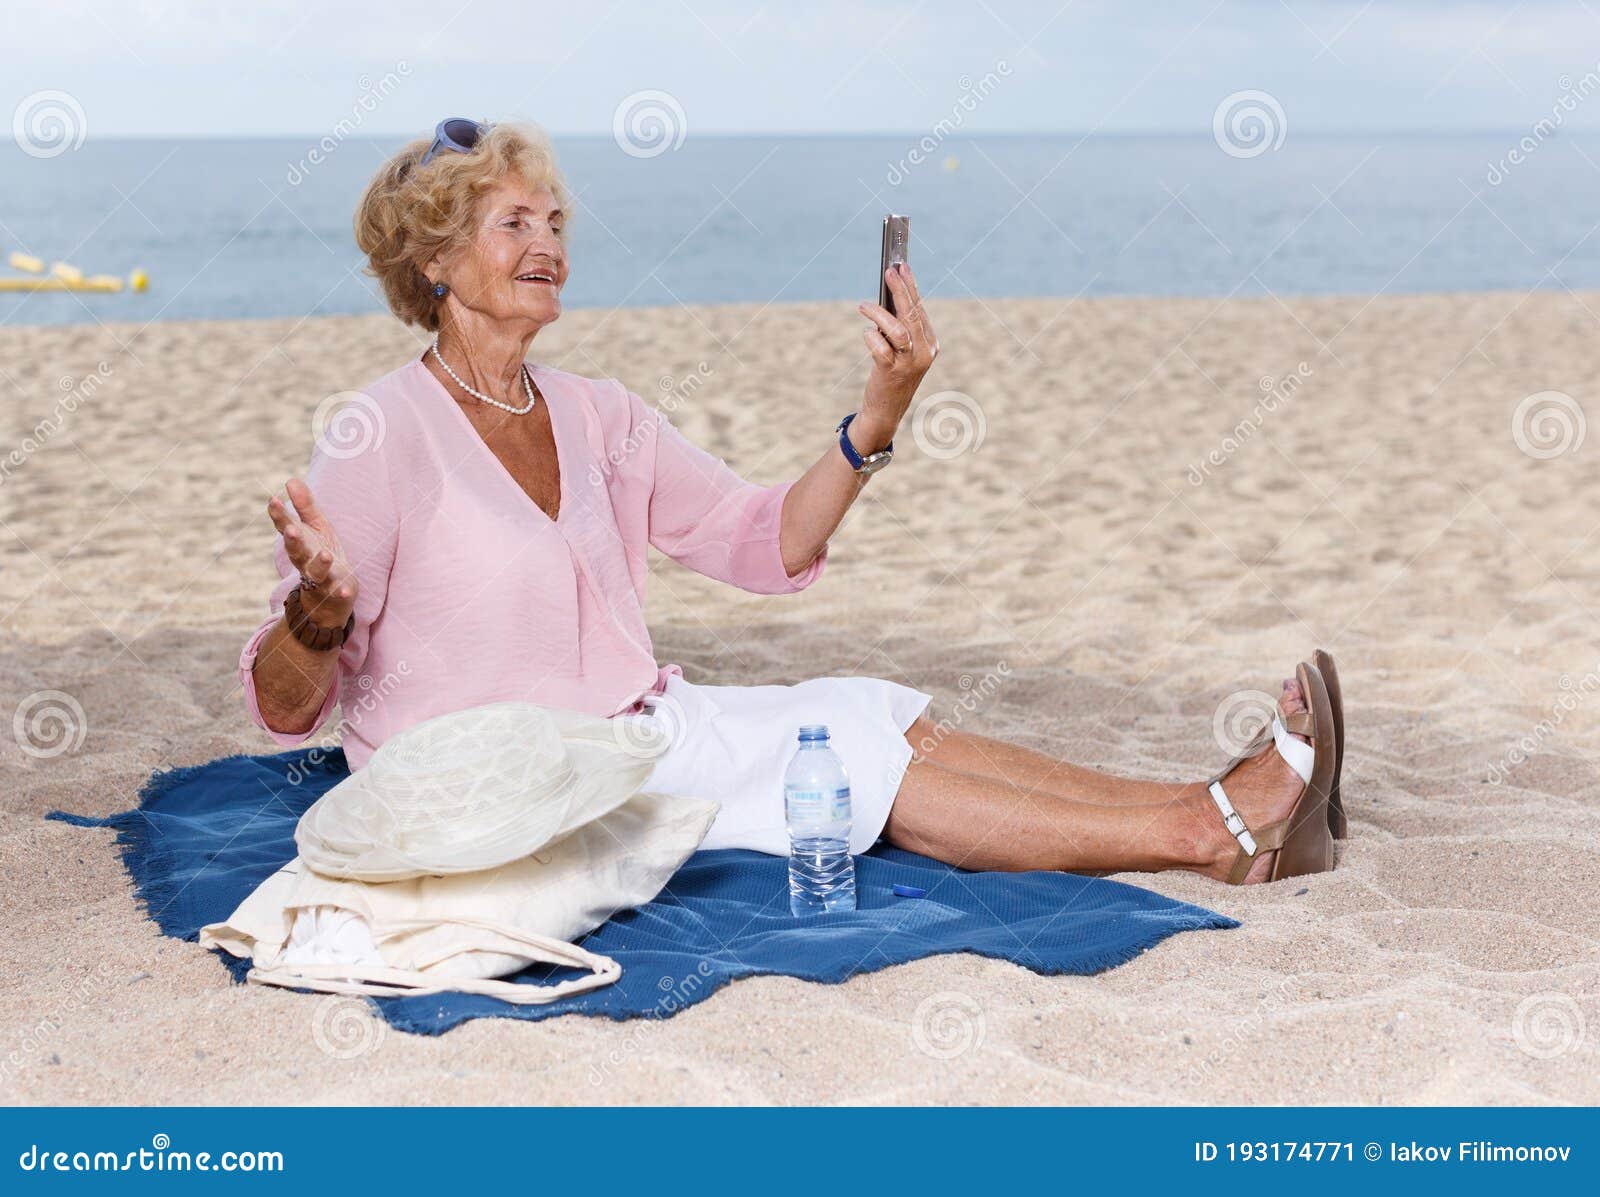 older mature woman beach selfie nude gallery pic